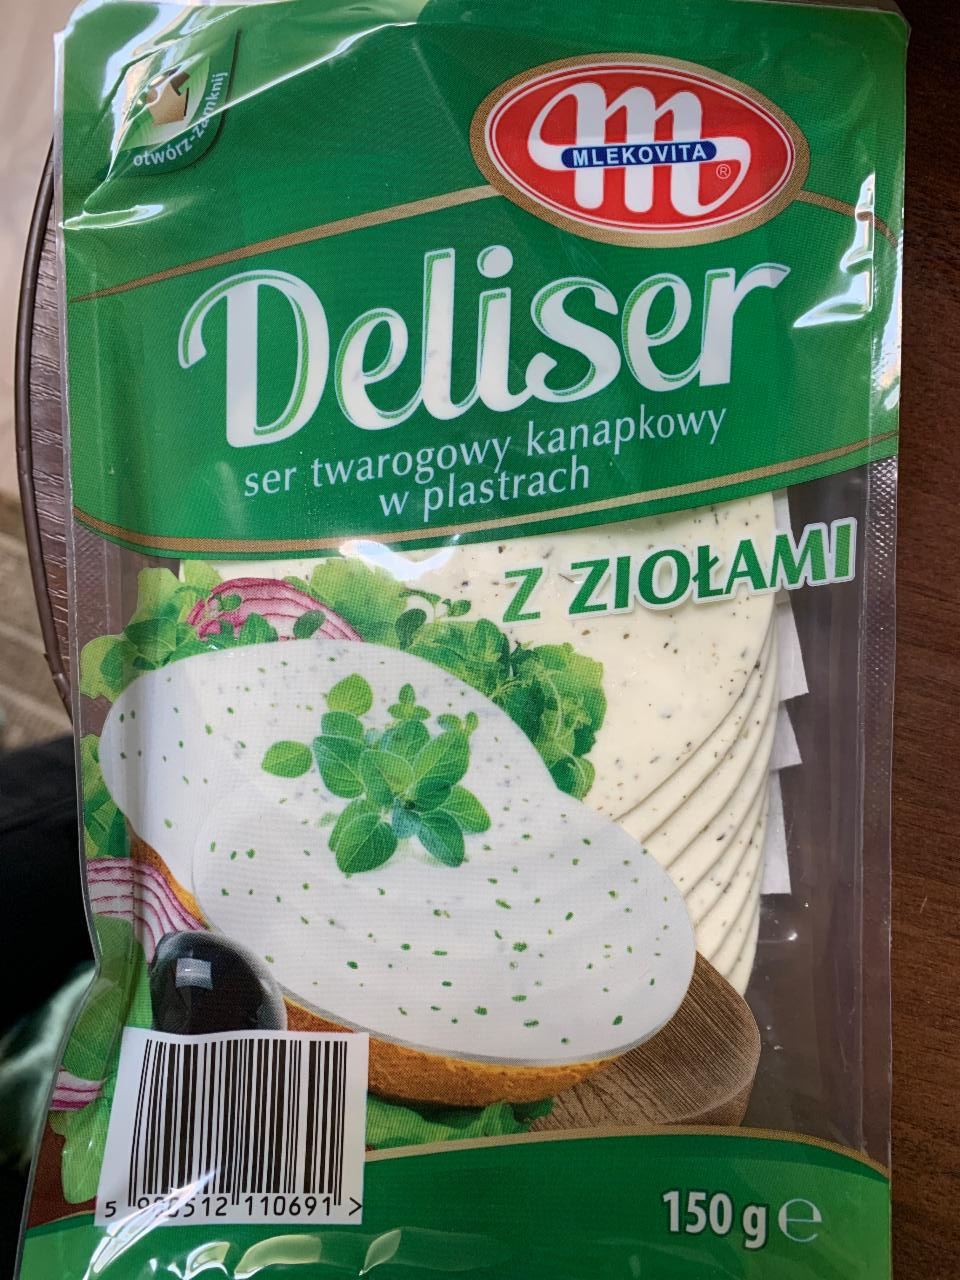 Zdjęcia - Deliser ser twarogowy kanapkowy w plastrach z ziołami Mlekovita